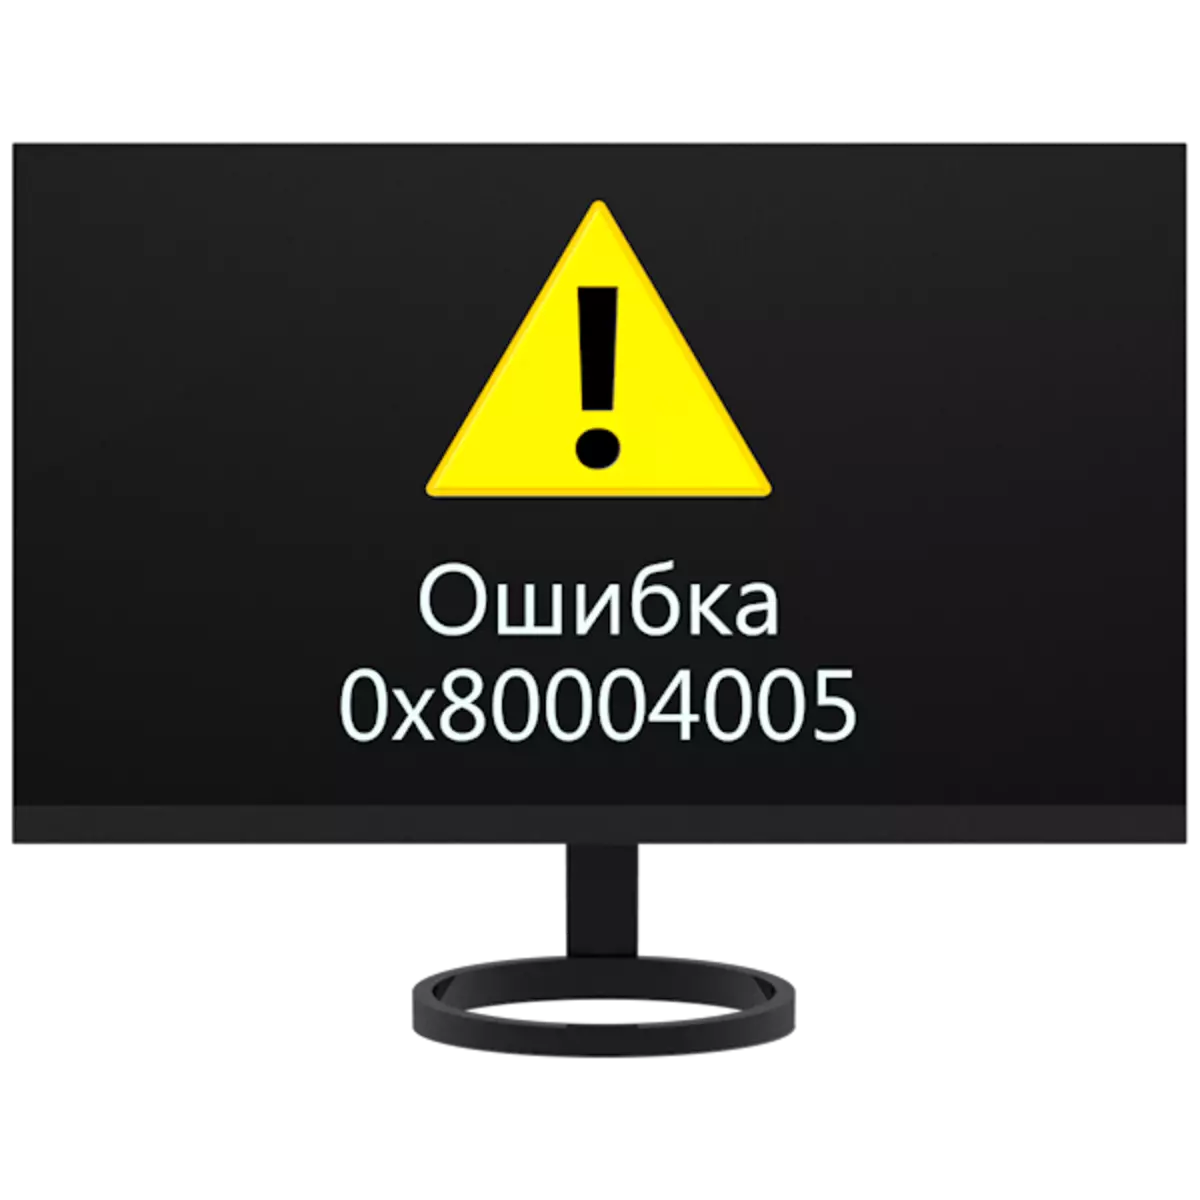 Zolakwika Zolakwika 0x80004005 mu Windows 7